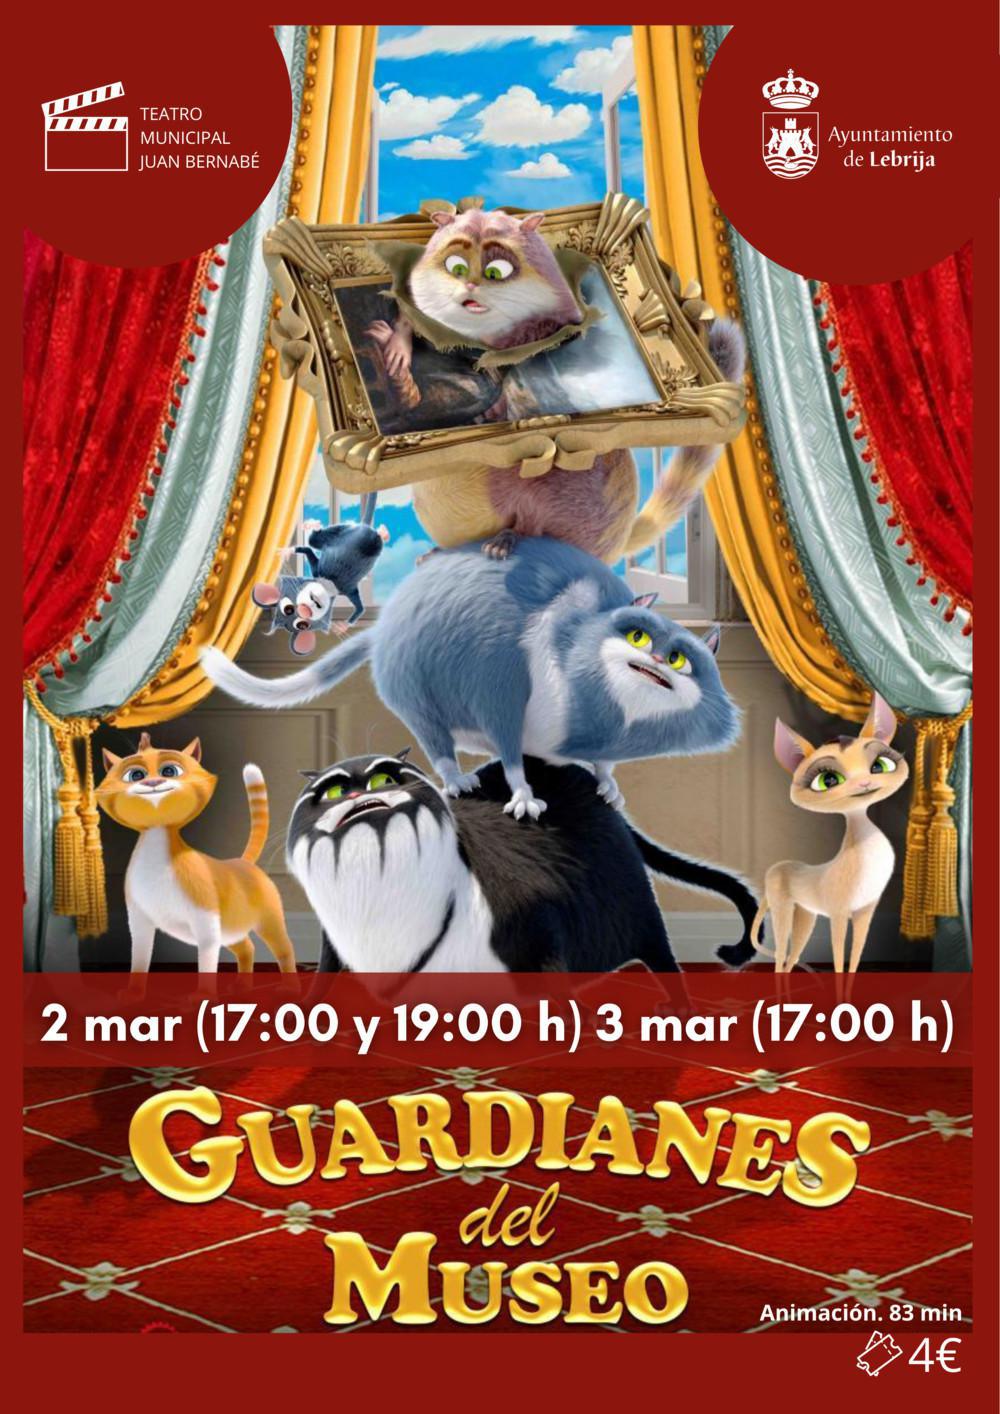 Teatro Municipal Juan Bernabé. Cine de invierno. Guardianes del museo. 2 de marzo (17:00 h y 19:00 h) - 3 de marzo (17:00 h).